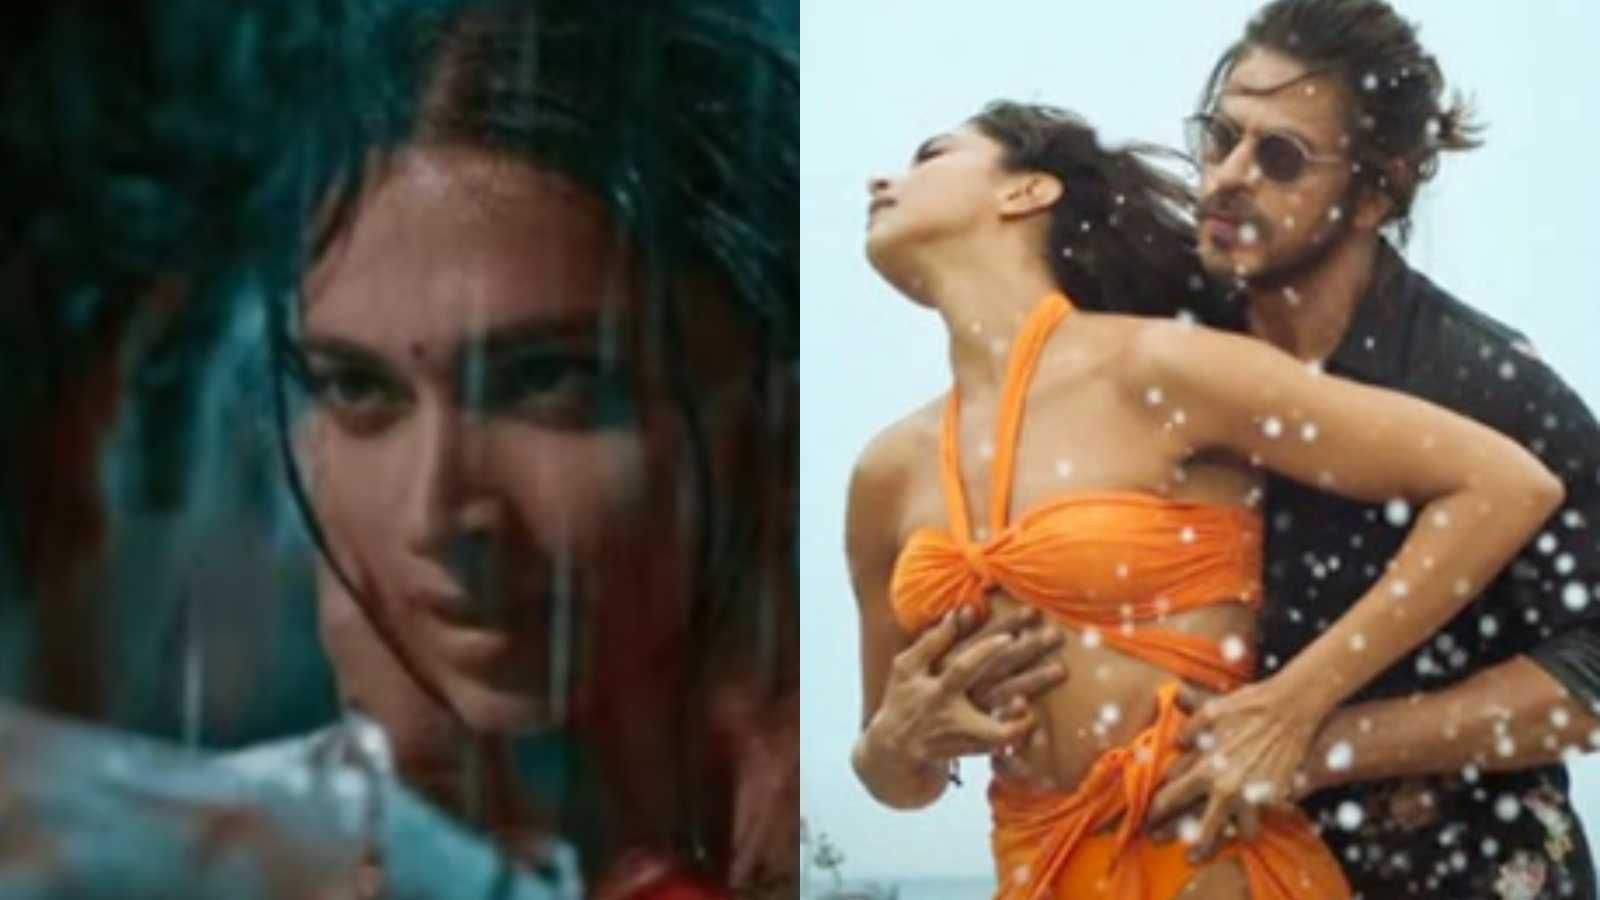 Mausam bigad diyaaa': Shah Rukh Khan's chiseled abs & Deepika Padukone's  dance moves in Besharam Rang get mixed response